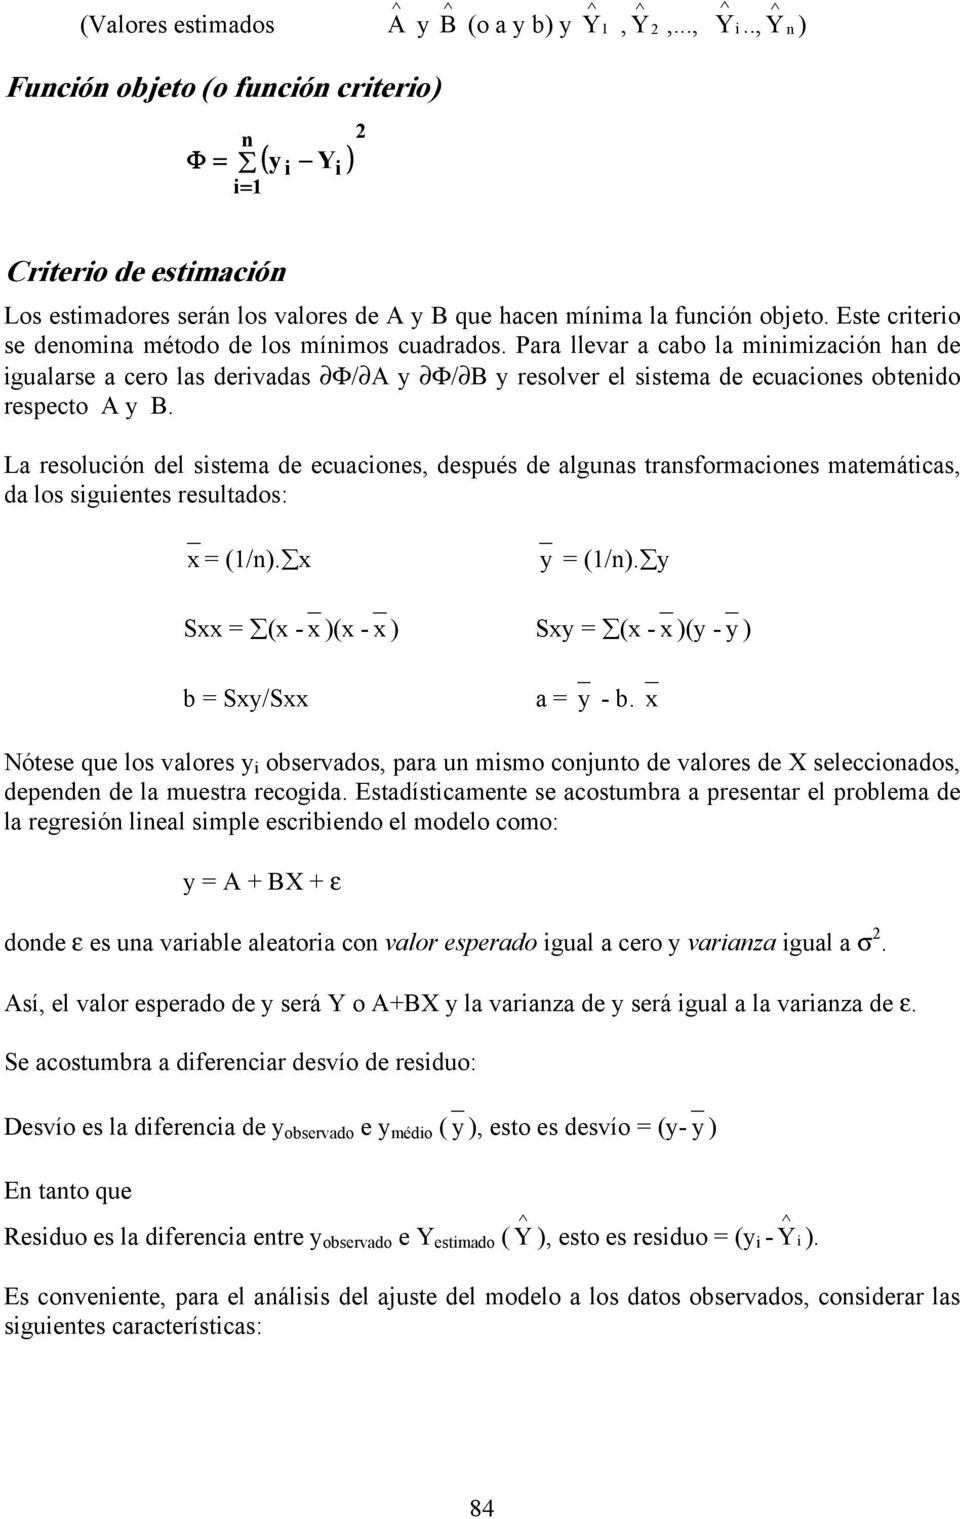 La resolucón del sstema de ecuacones, después de algunas transformacones matemátcas, da los sguentes resultados: x = (/n). x y = (/n).